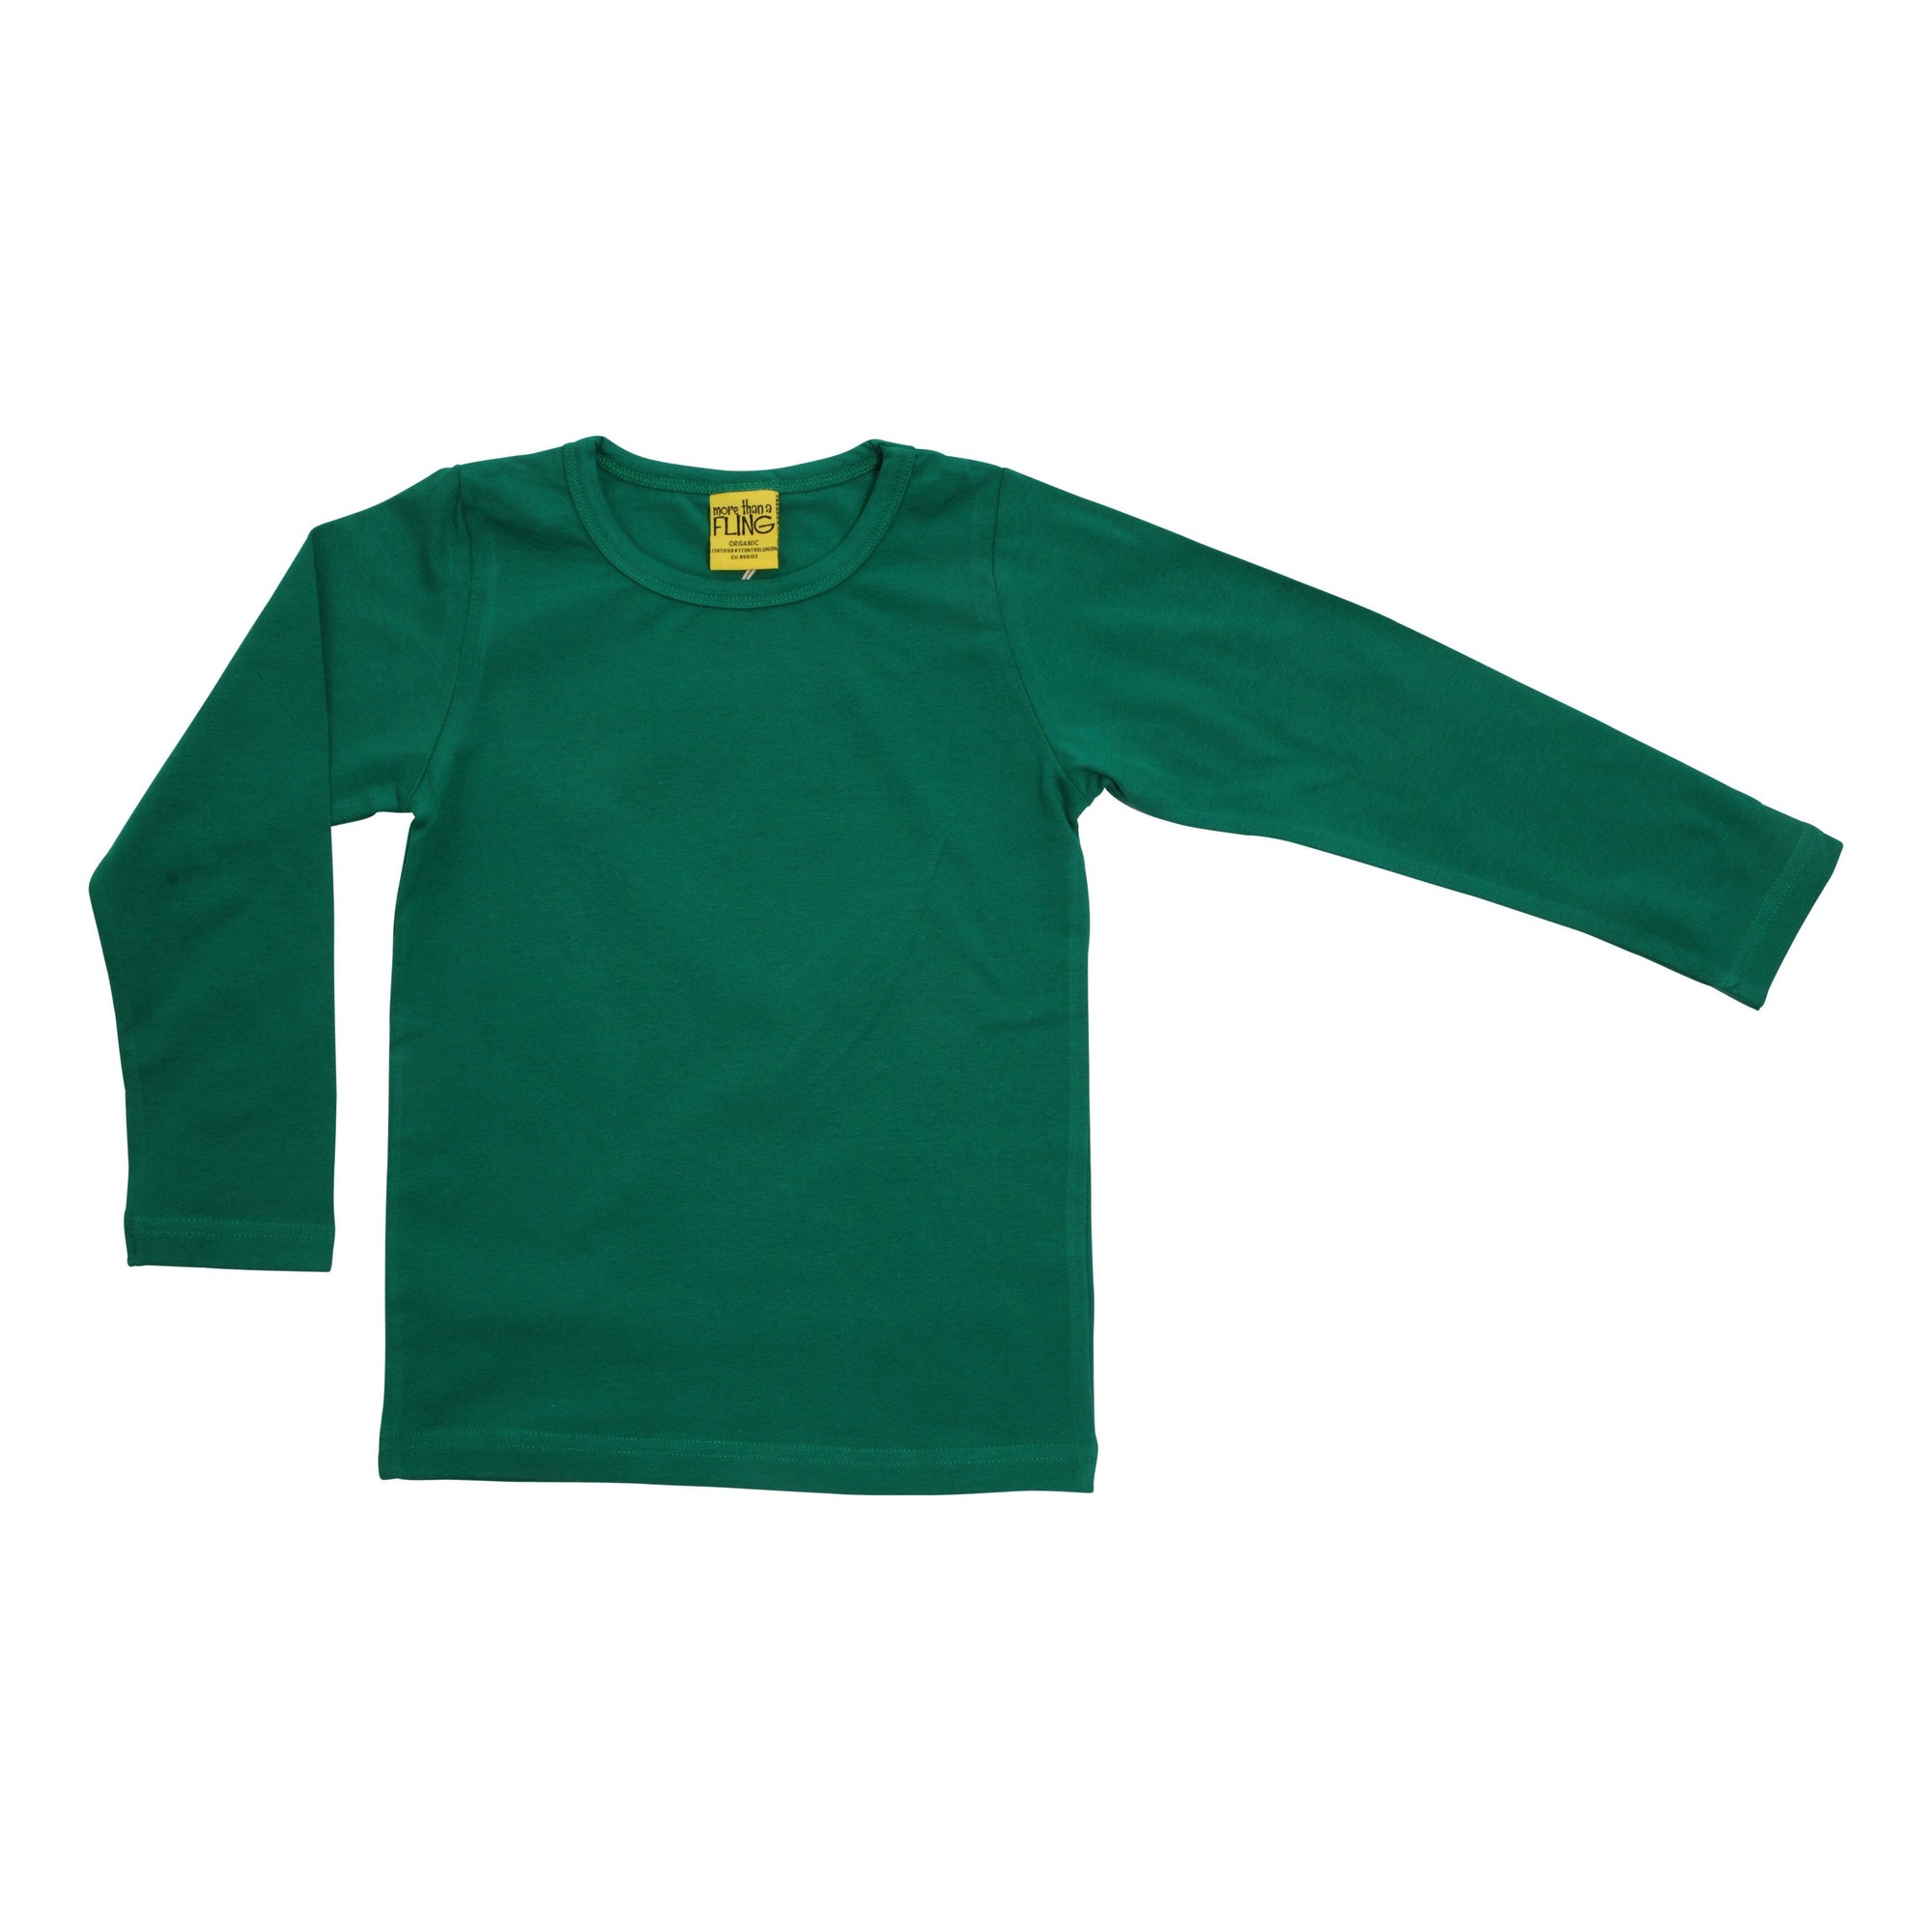 Cadmium Green Long Sleeve Shirt - 2 Left Size 2-4 & 4-6 years-More Than A Fling-Modern Rascals